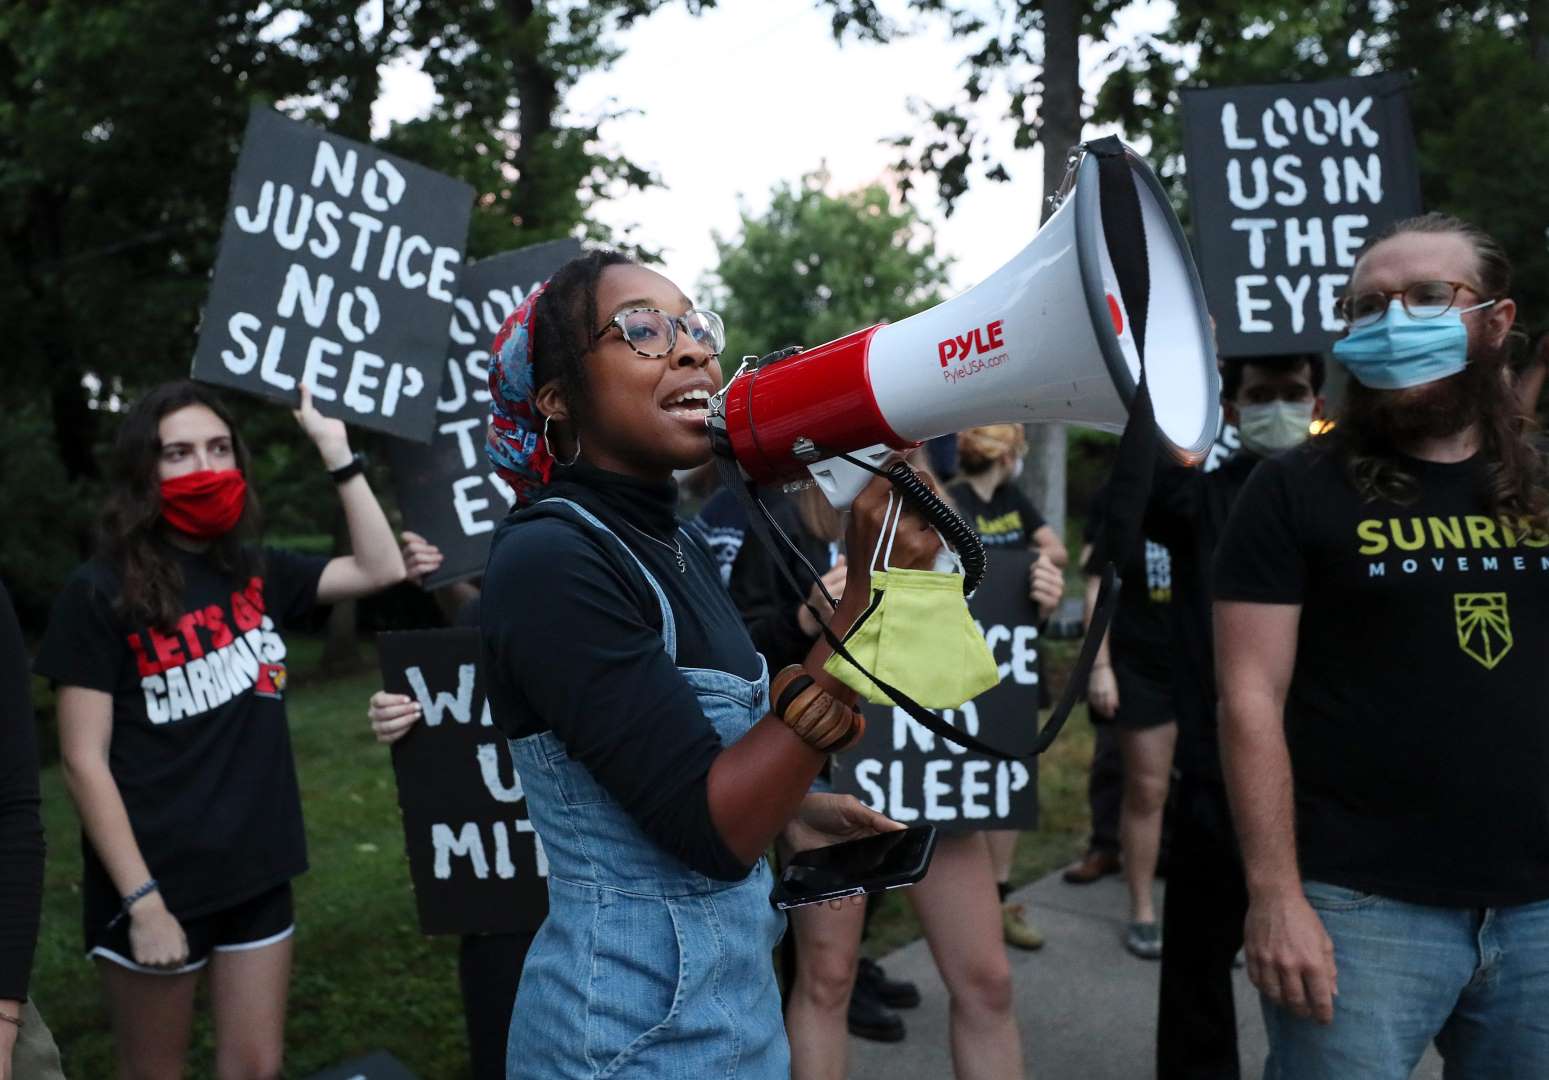 Un attivista di Sunrise parla in un megafono mentre altri manifestanti stanno dietro con cartelli che dicono "No Justice No Sleep" e "Look Us In The Eyes".